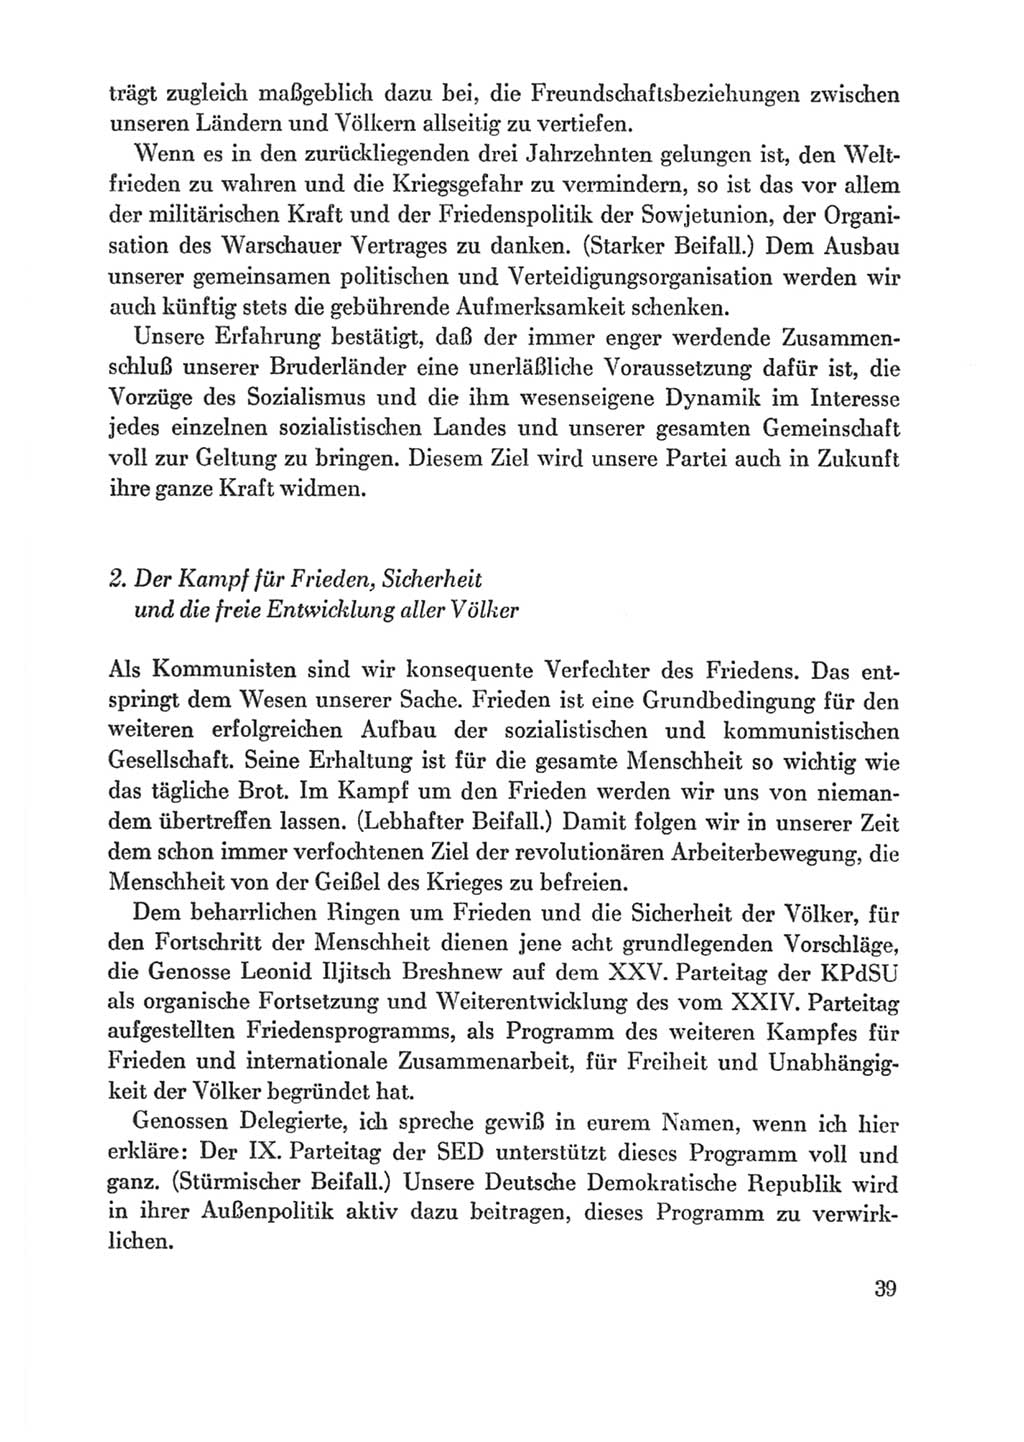 Protokoll der Verhandlungen des Ⅸ. Parteitages der Sozialistischen Einheitspartei Deutschlands (SED) [Deutsche Demokratische Republik (DDR)] 1976, Band 1, Seite 39 (Prot. Verh. Ⅸ. PT SED DDR 1976, Bd. 1, S. 39)